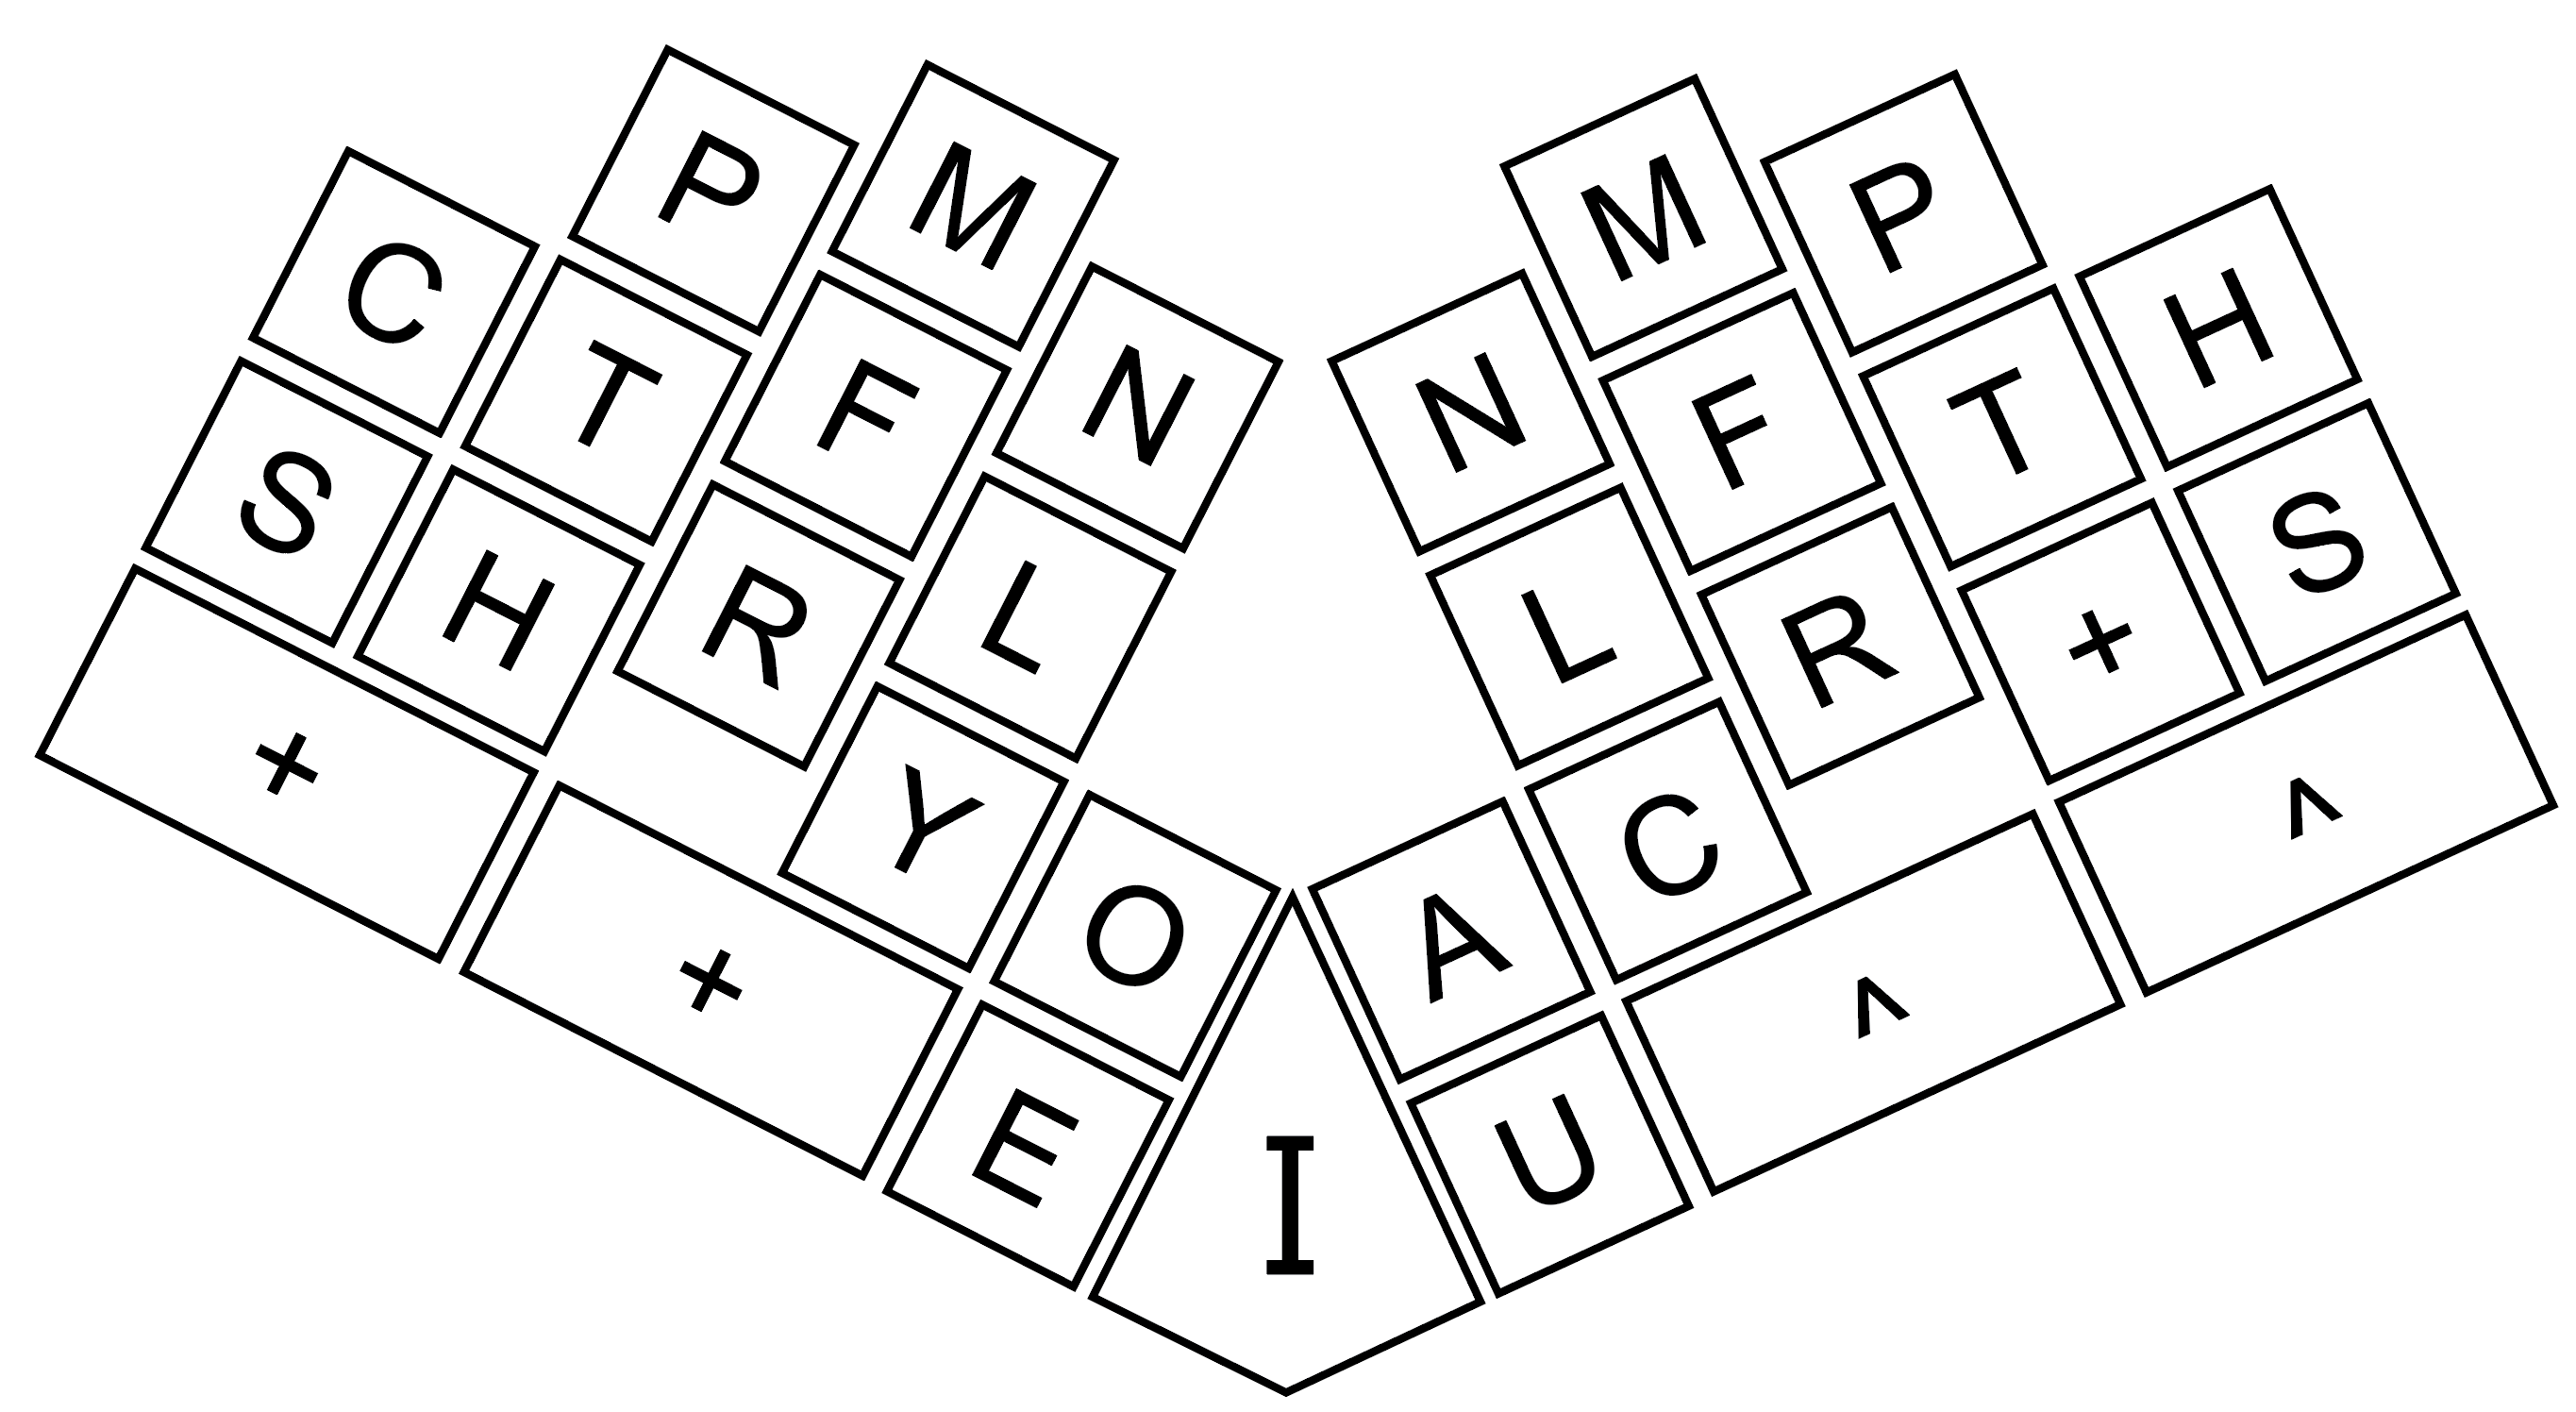 Palantype layout with key names